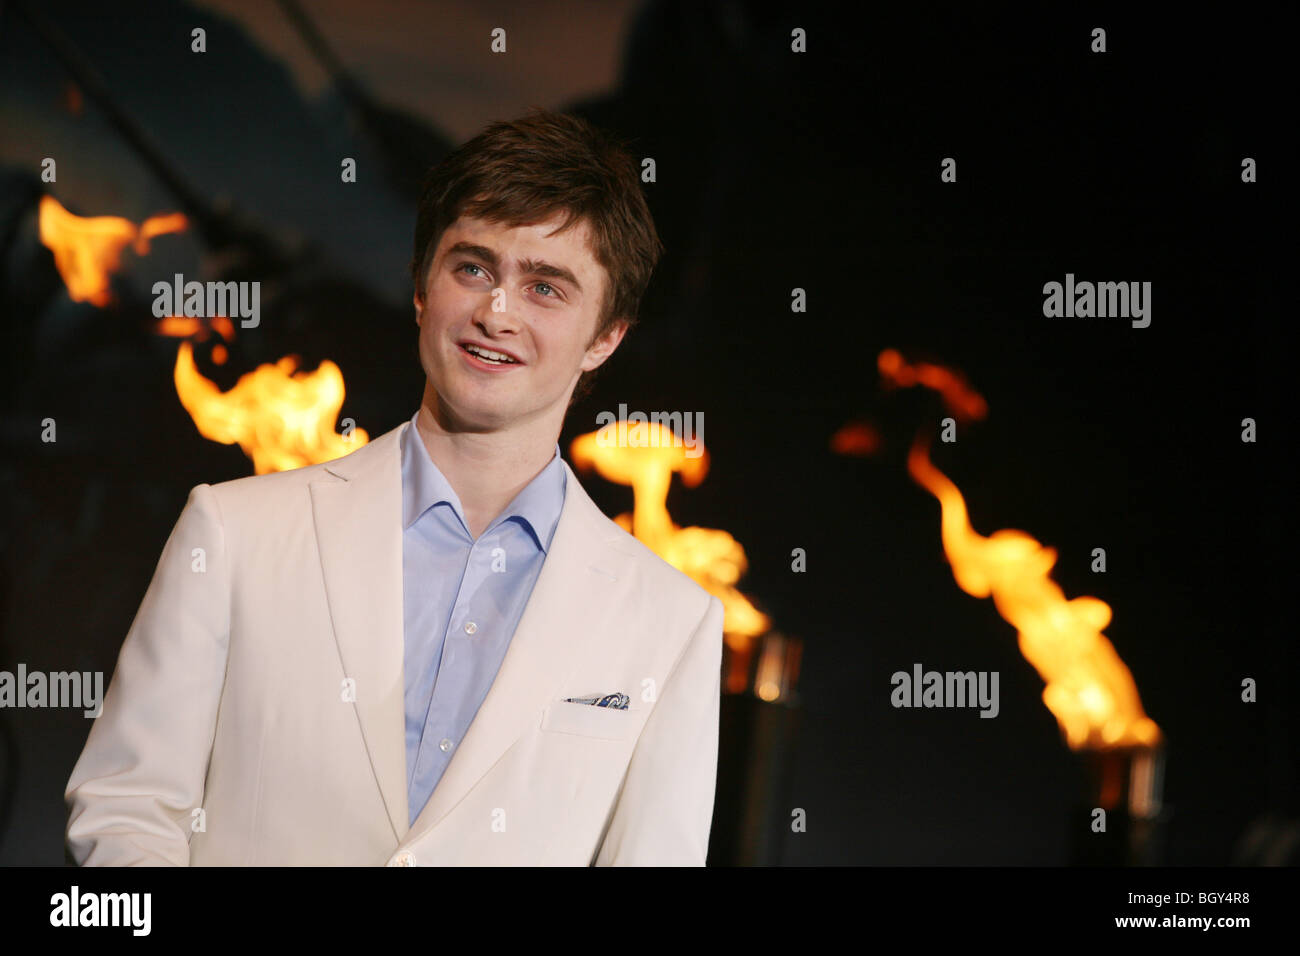 Schauspieler Daniel Radcliffe am roten Teppich Premiere des 5. Harry Potter Film "Harry Potter und der Orden des Phönix", Tokio Stockfoto